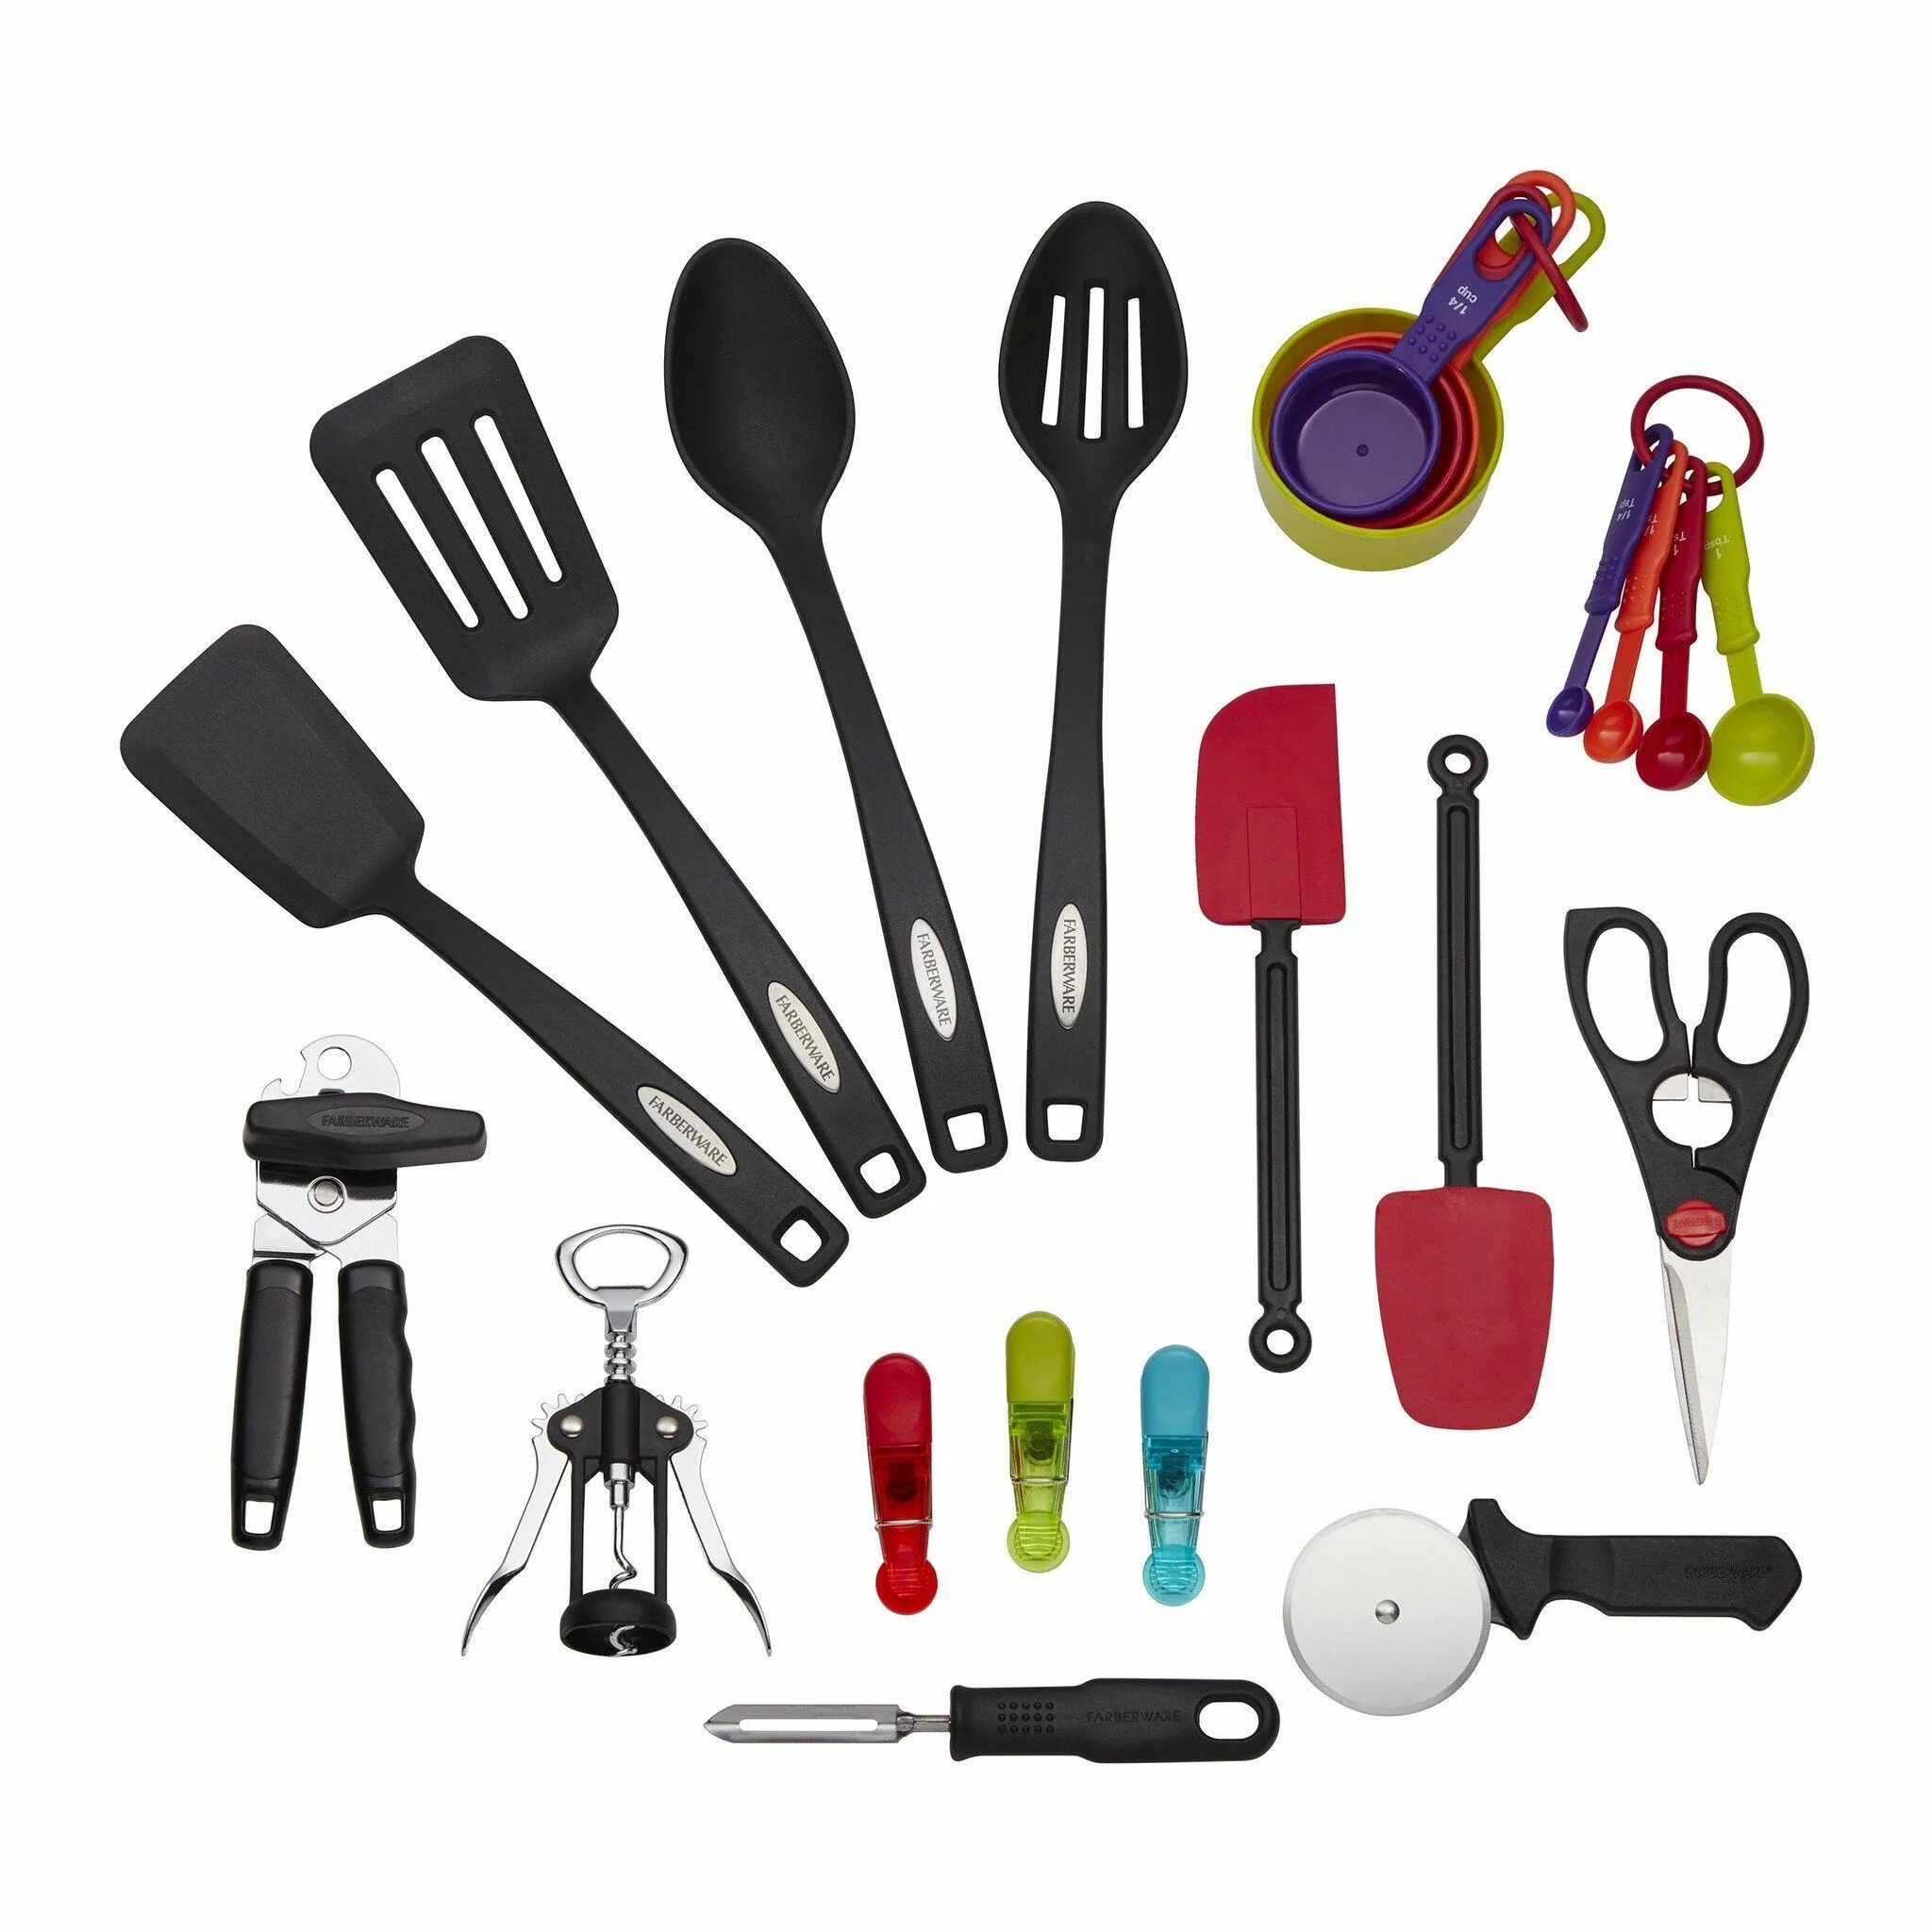 Items tools. Кухонные принадлежности. Кухонные инструменты и инвентарь. Кухонные принадлежности приборы. Кухонные приспособления.